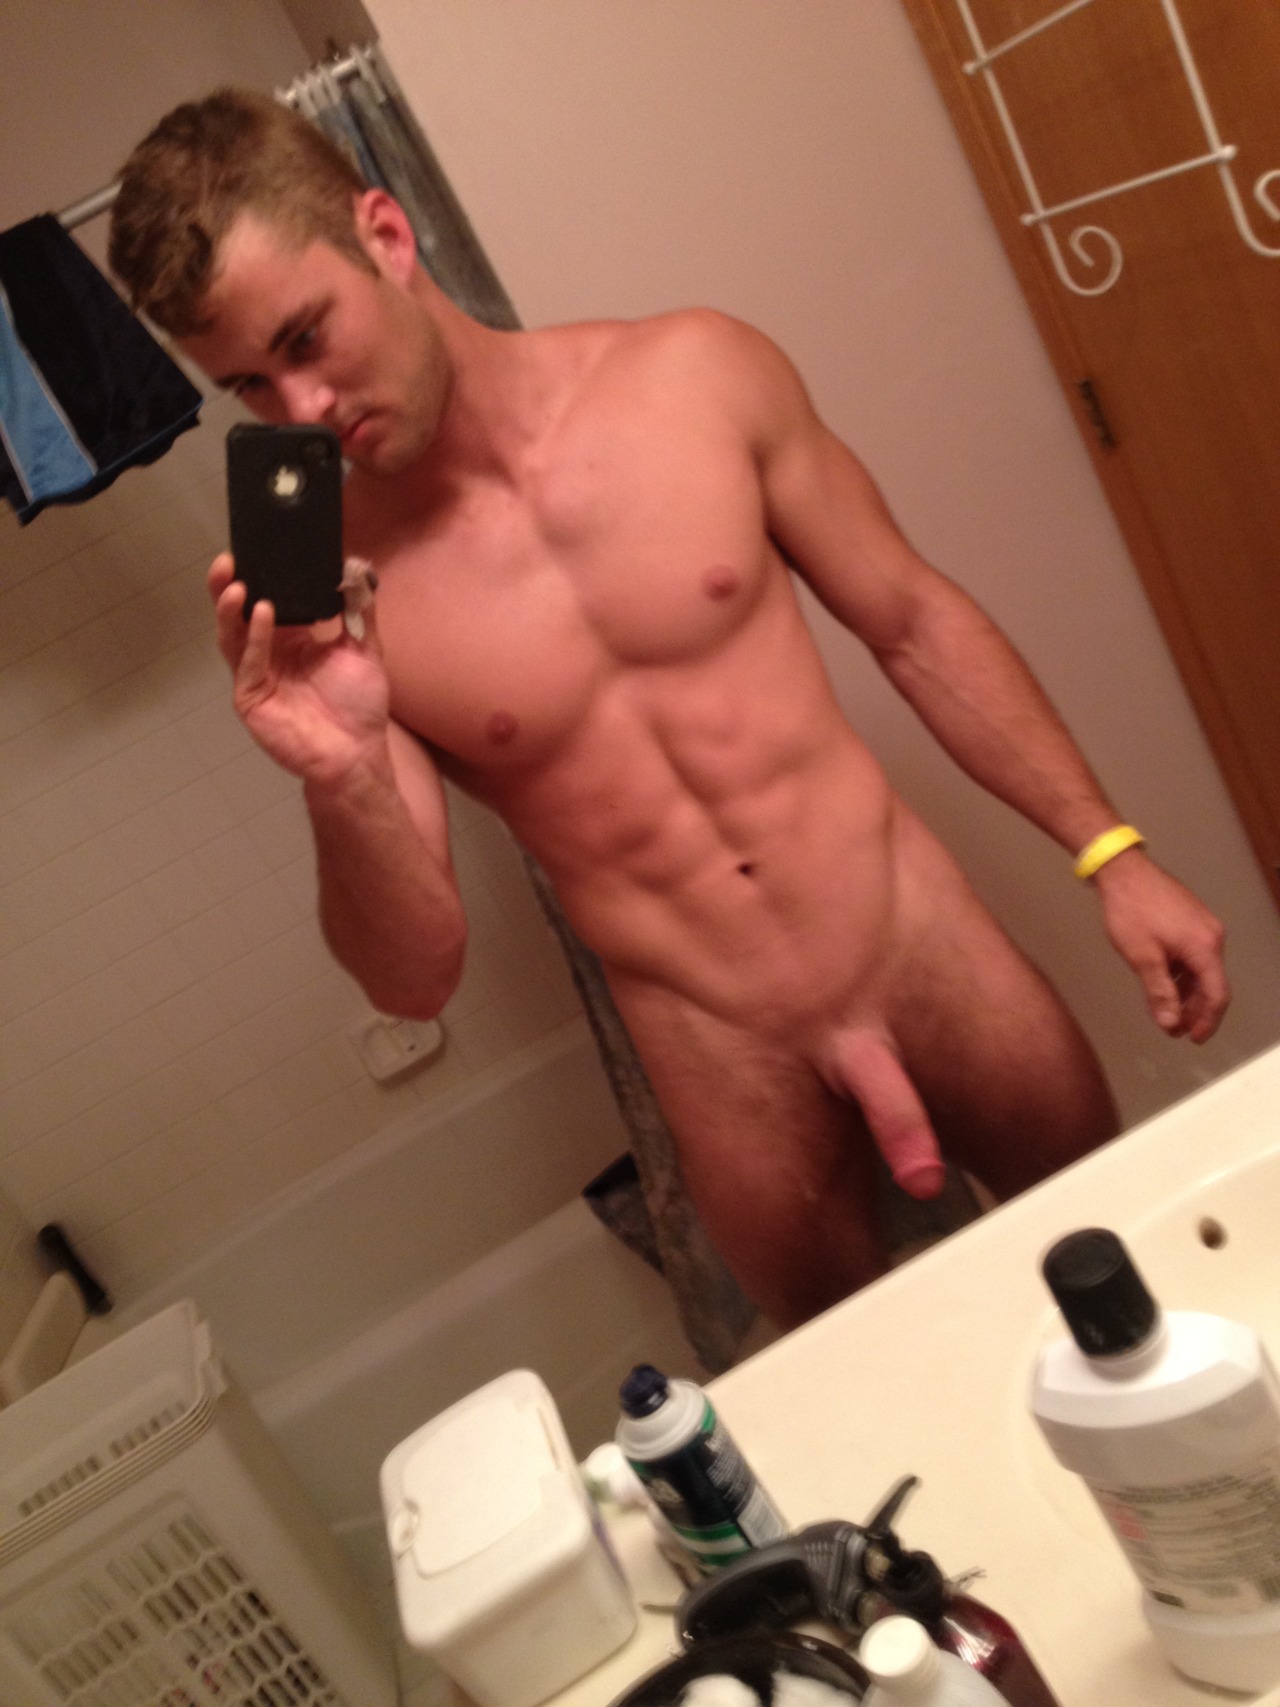 Male naked guy selfie